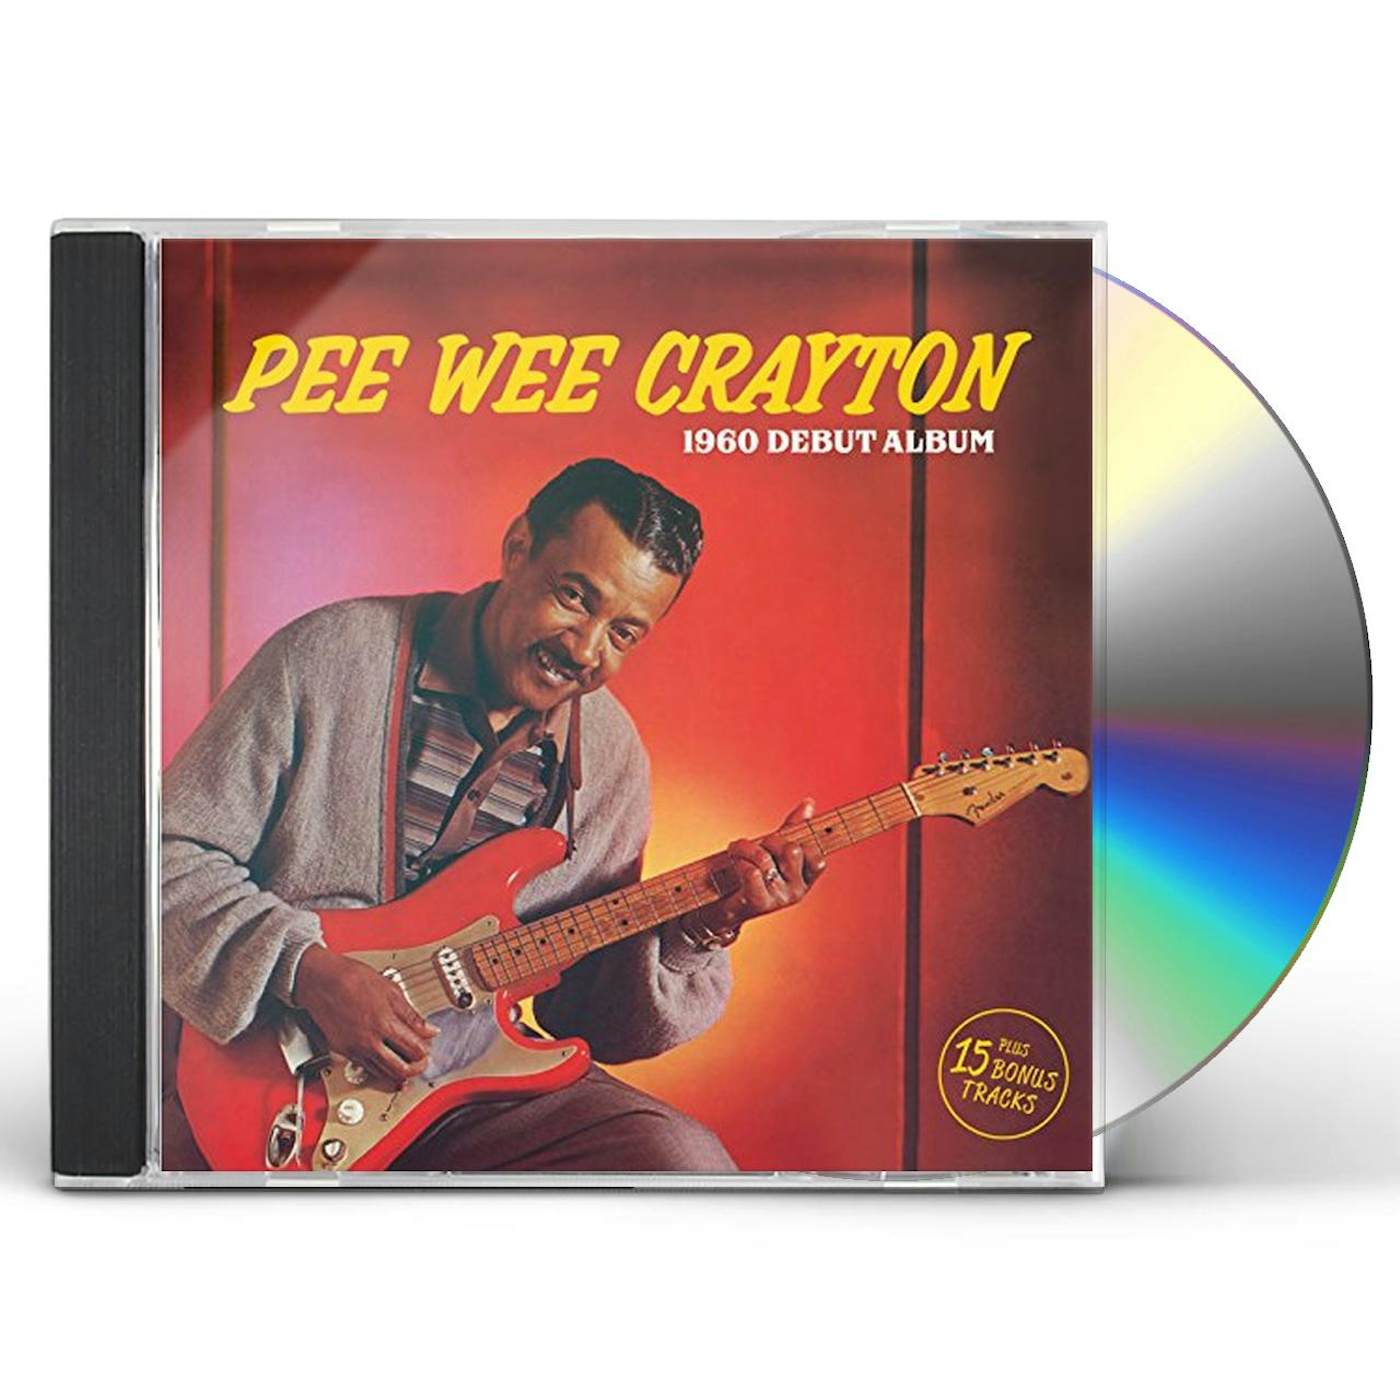 PEE WEE CRAYTON  (24 BIT REMASTER/1960 DEBUT/15 BONUS TRACKS) CD